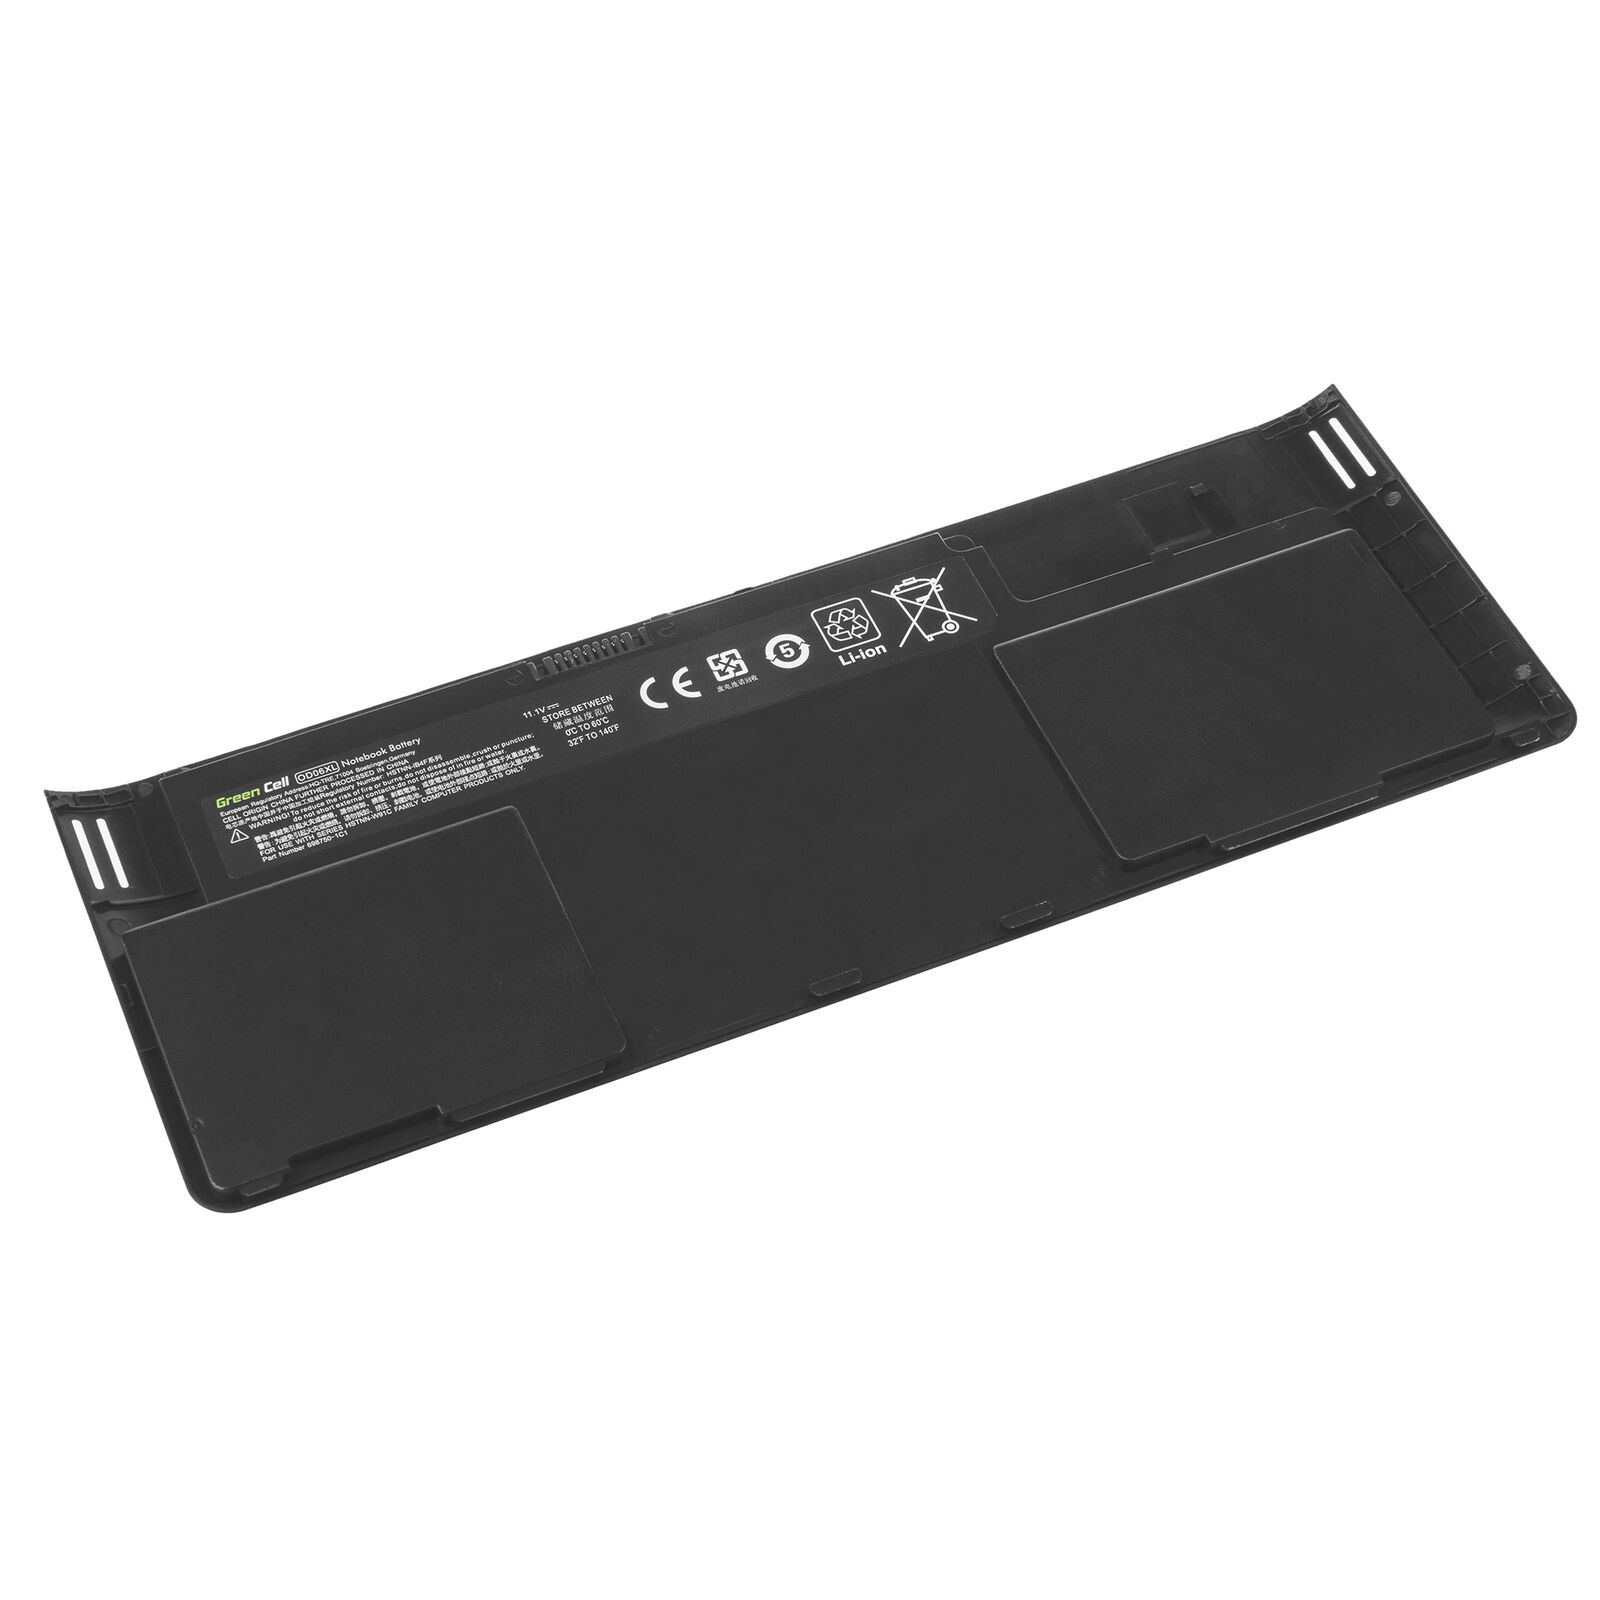 Accu voor HP EliteBook Revolve 810 G1 G2 G3 0D06XL HSTNN-IB4F HSTNN-W91C(compatible)